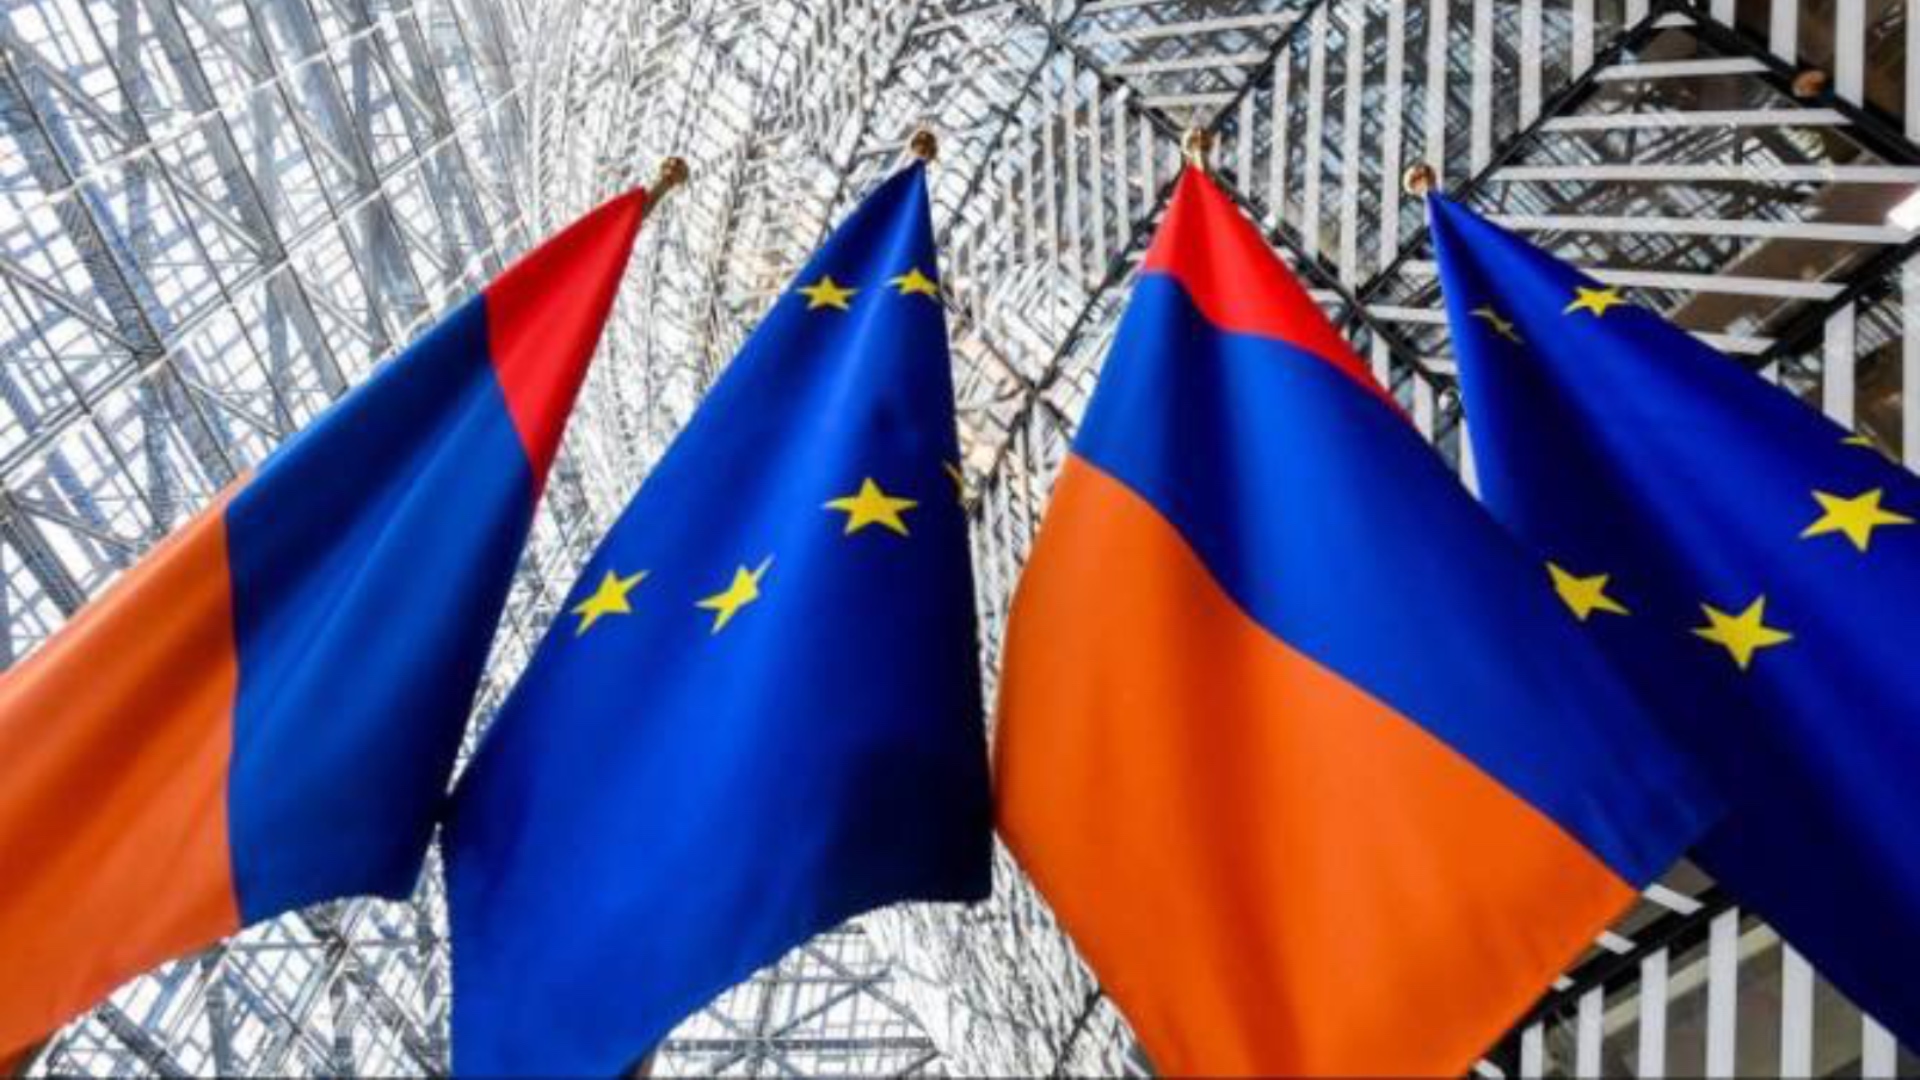 Հայաստան-ԵՄ նոր համաձայնագրի ստորագրումը ձգձգվում է․ ԱԳՆ-ից նոր ժամկետներ են նշում